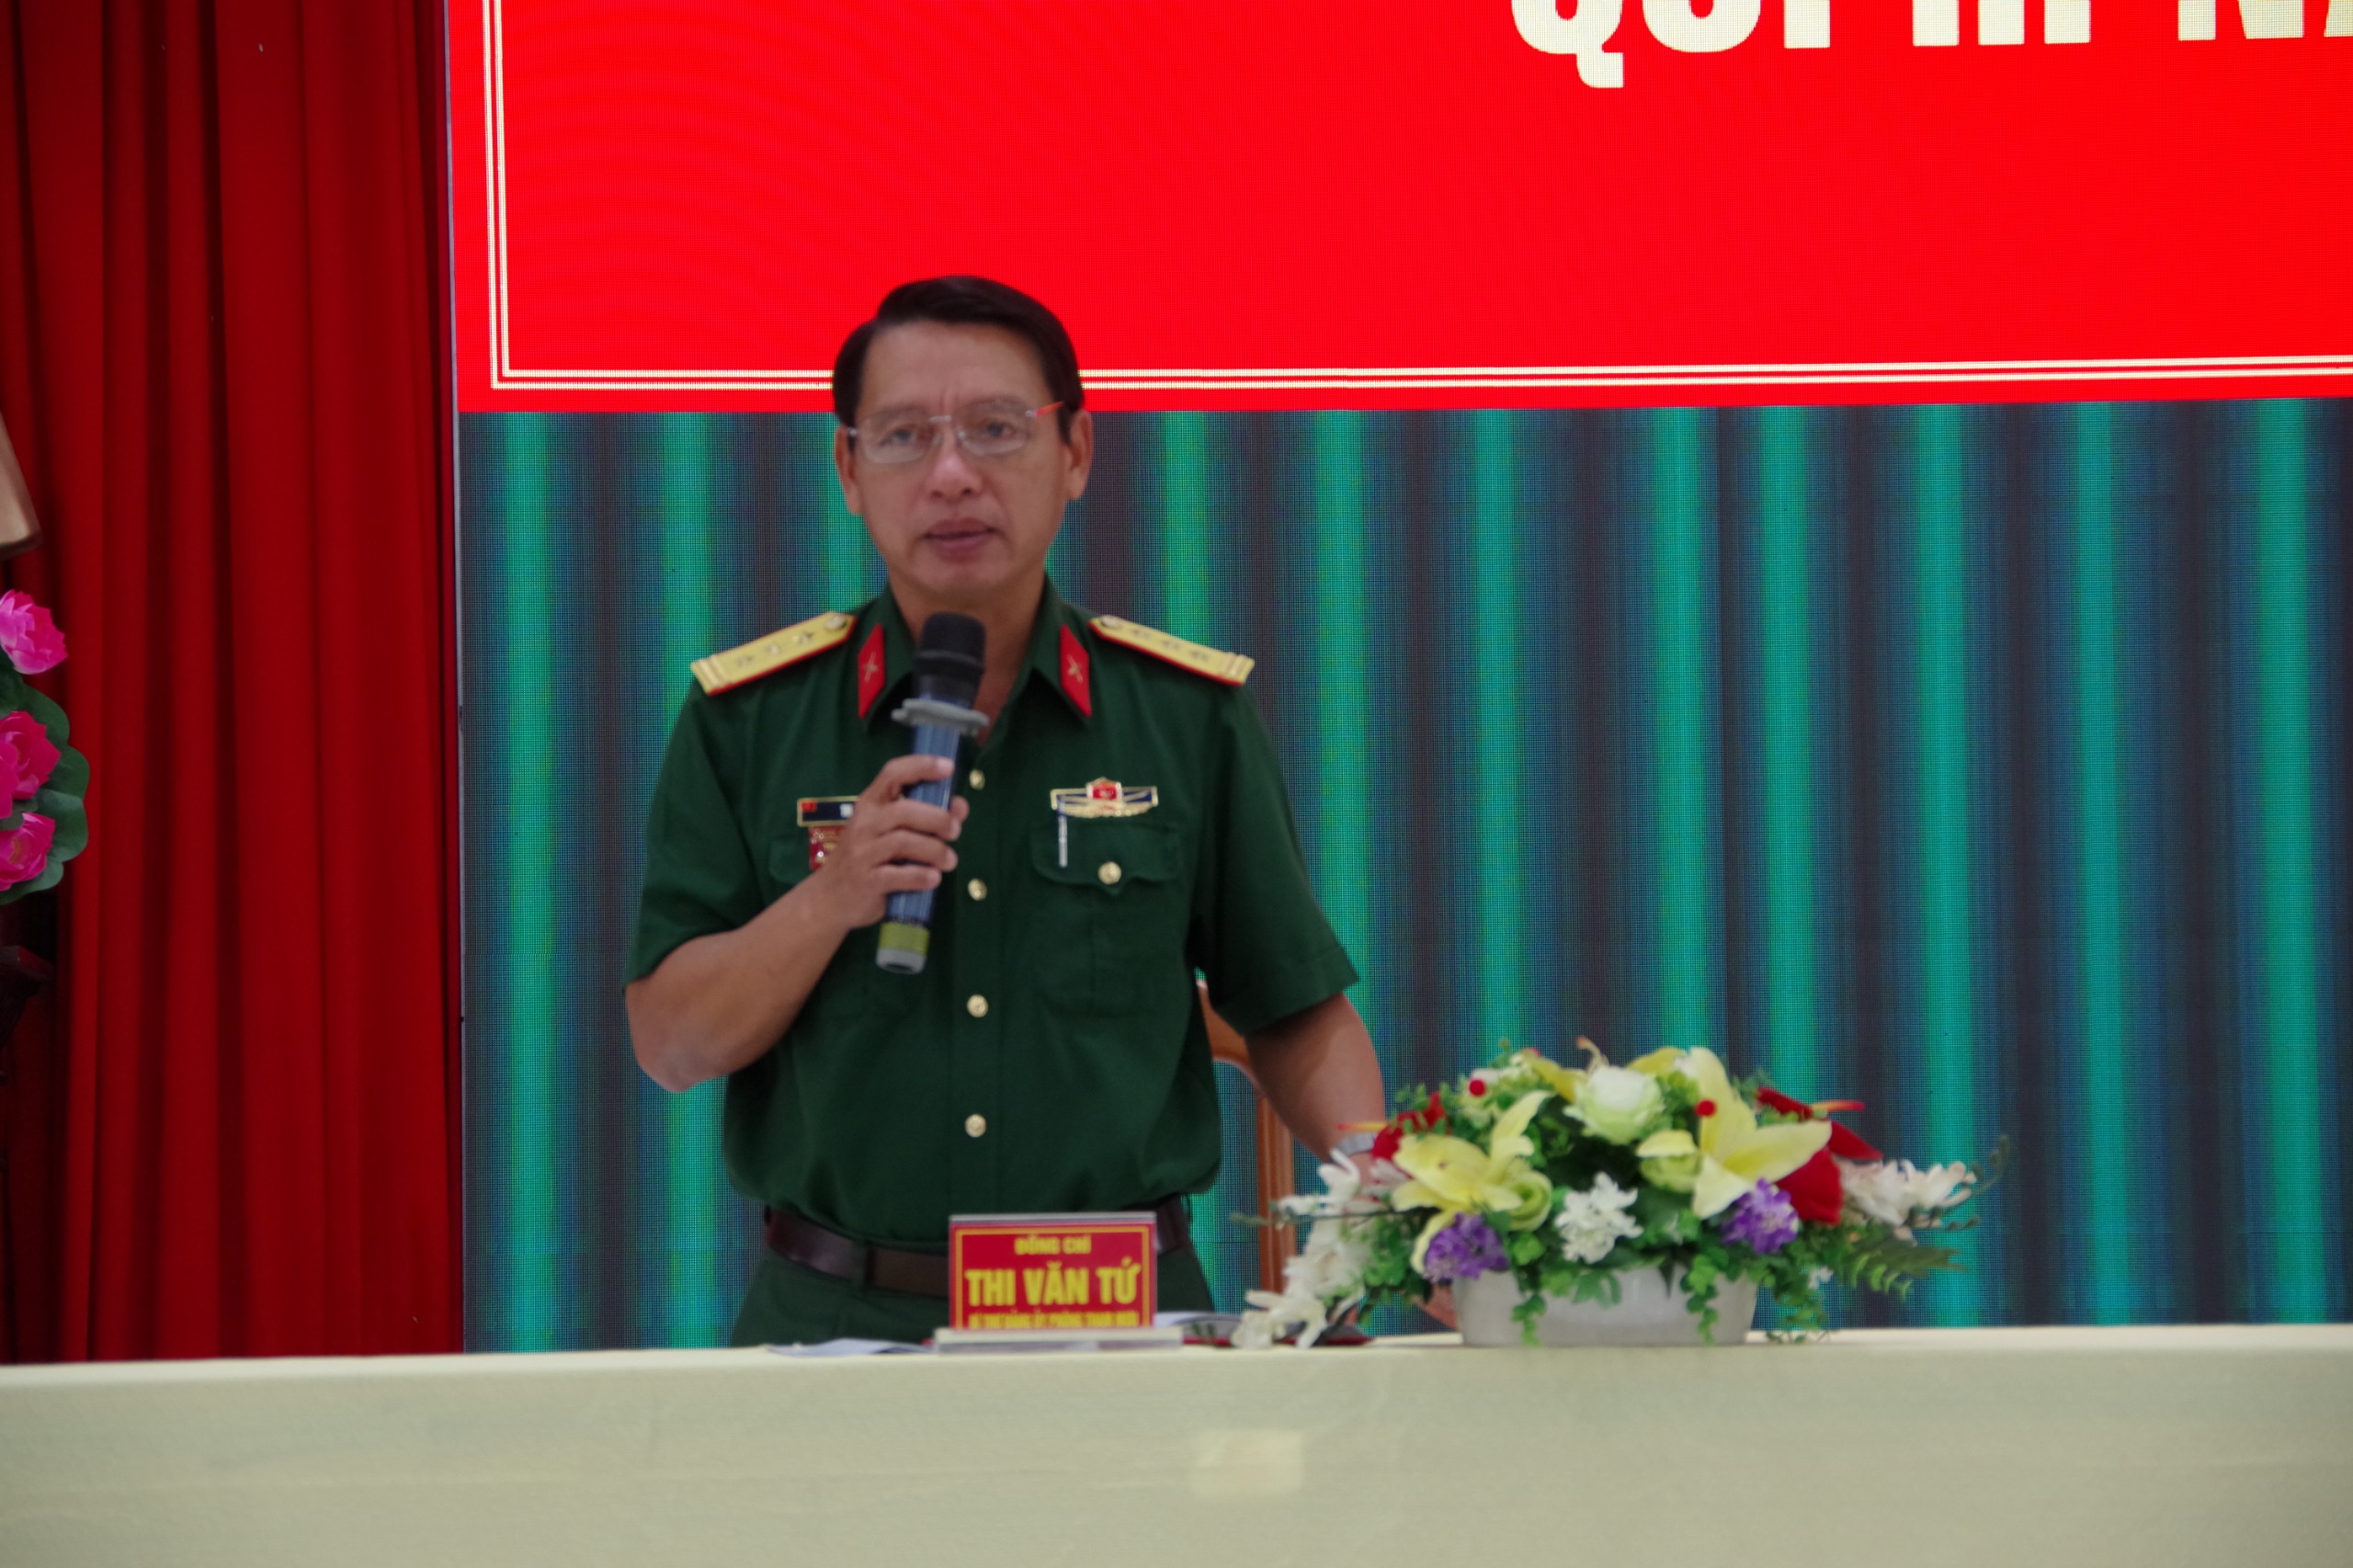 Thượng tá Thi Văn Tứ giải đáp các vấn đề được nêu ra tại buổi đối thoại dân chủ với cán bộ, chiến sĩ, nhân viên Phòng Tham mưu (Bộ Chỉ huy Quân sự tỉnh).